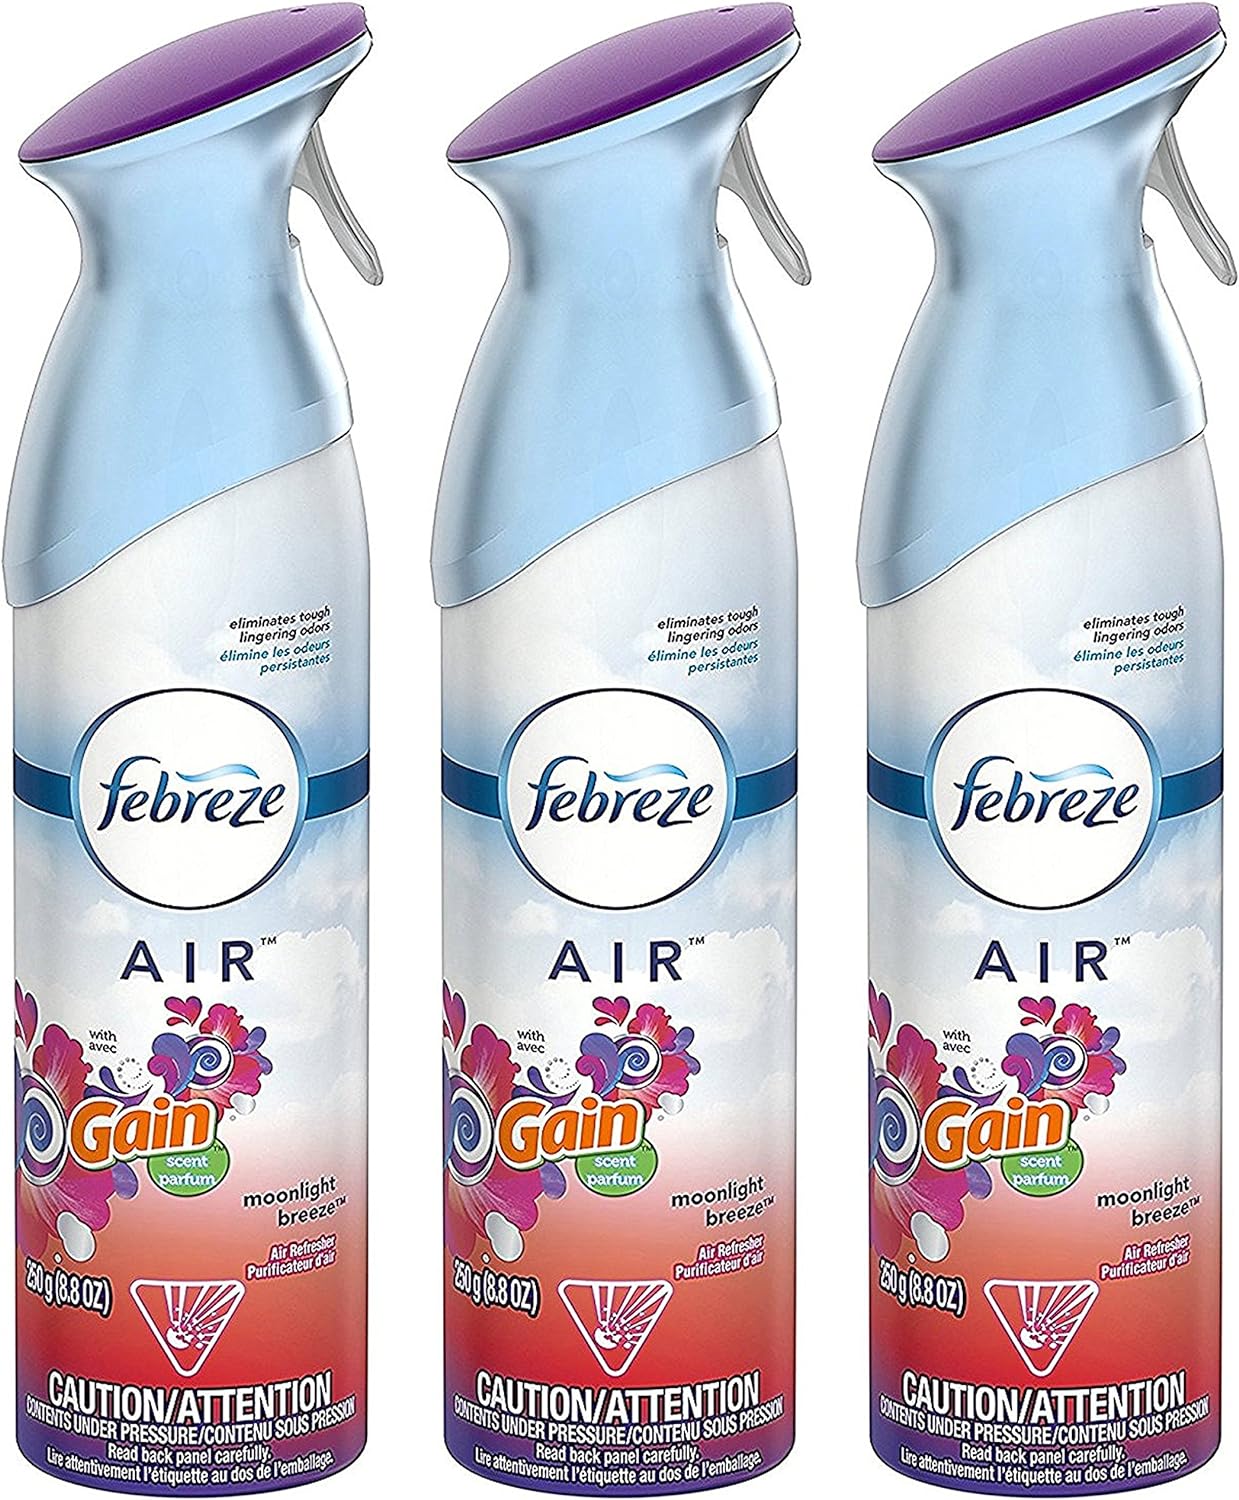 Febreze Air Freshener Spray - Gain Moonlight Breeze - Net Wt. 8.8 OZ (250 g) Per Bottle - Pack of 3 Bottles